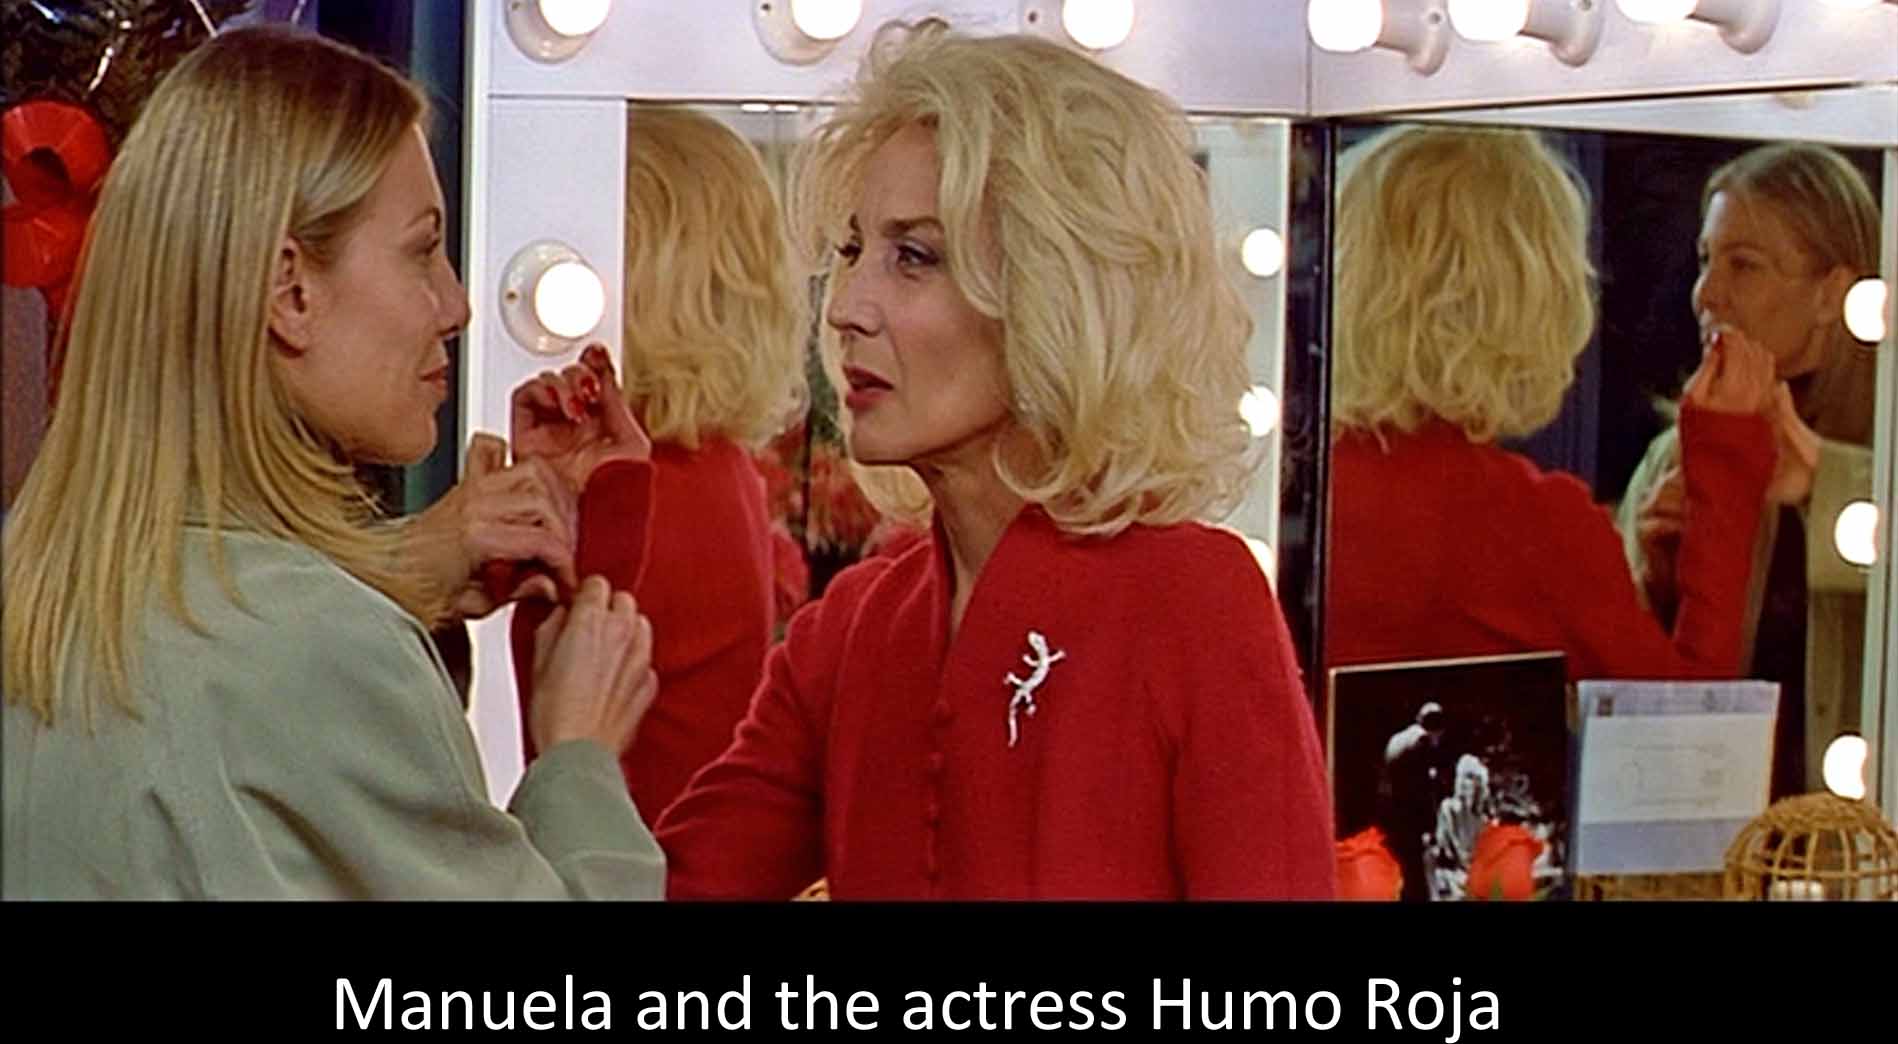 Manuela and the actress Humo Roja